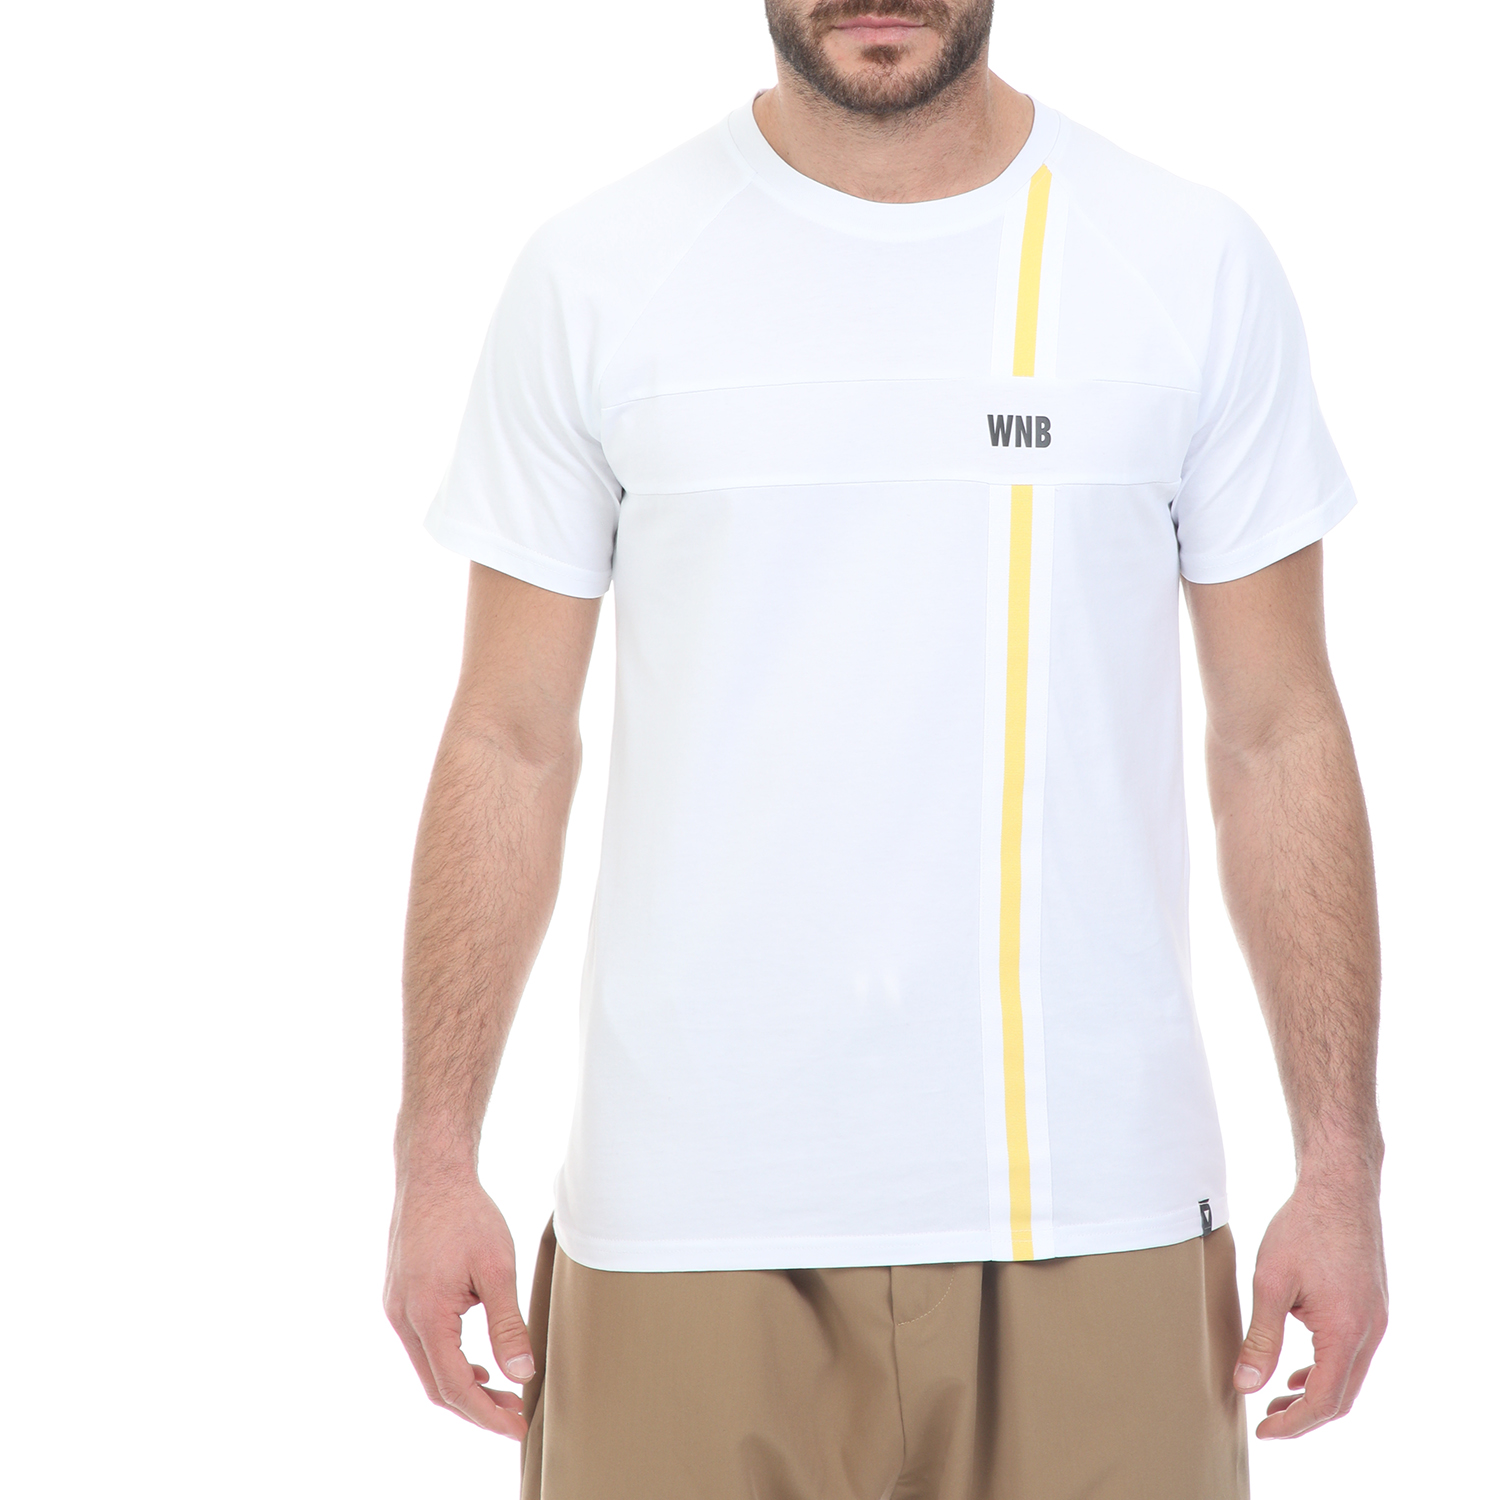 Ανδρικά/Ρούχα/Μπλούζες/Κοντομάνικες WHY NOT - Ανδρικό t-shirt WHY NOT TEE BAND λευκό